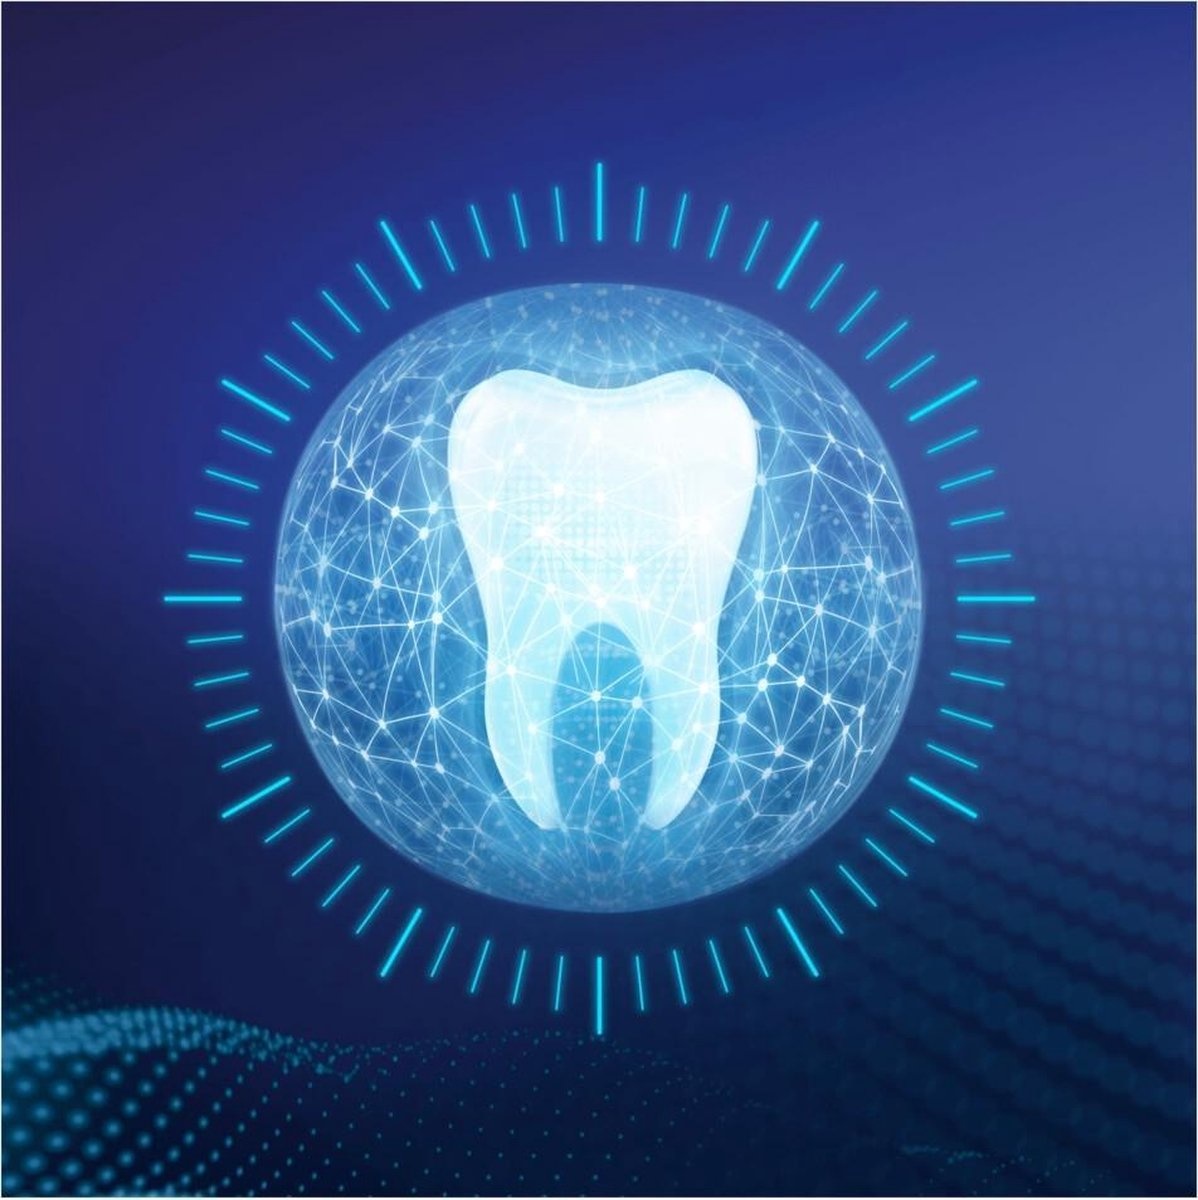 Oral-B Zahnpasta Pro-Expert Schutz empfindlicher Zähne - 75 ml